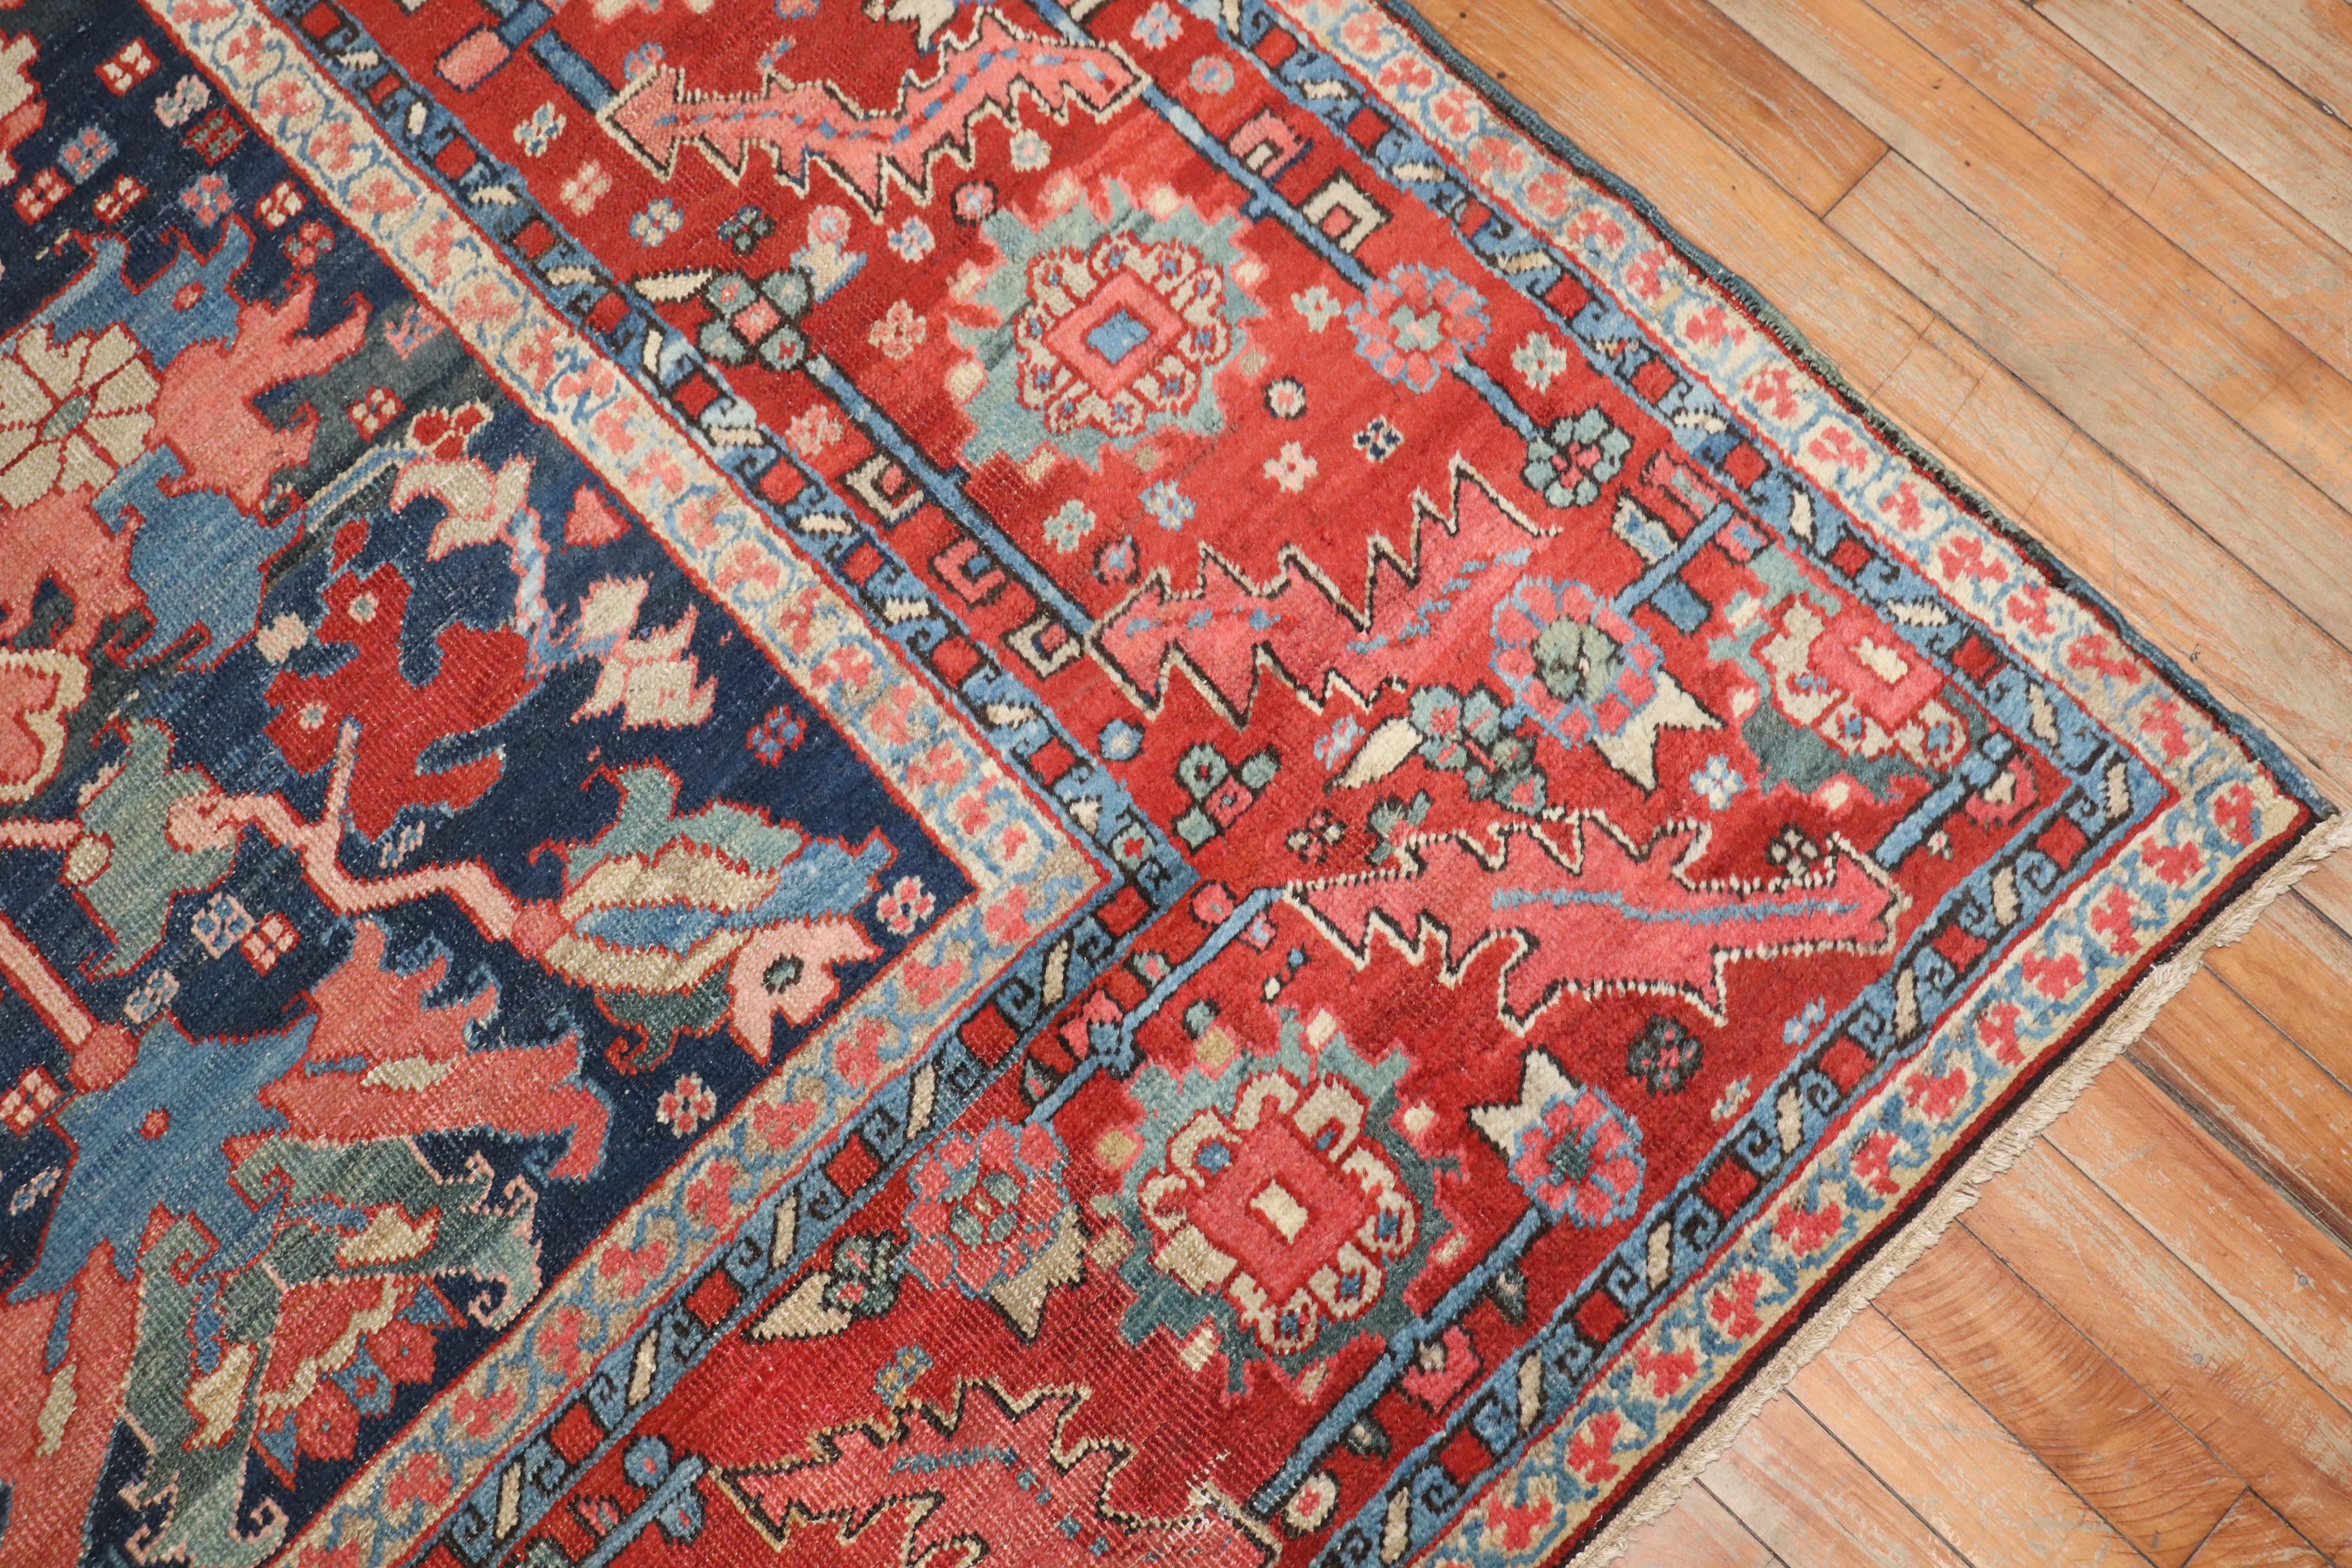 Un captivant tapis persan Serapi de la fin du 19e siècle aux tonalités de joyaux.

9'11'' x 12'8''